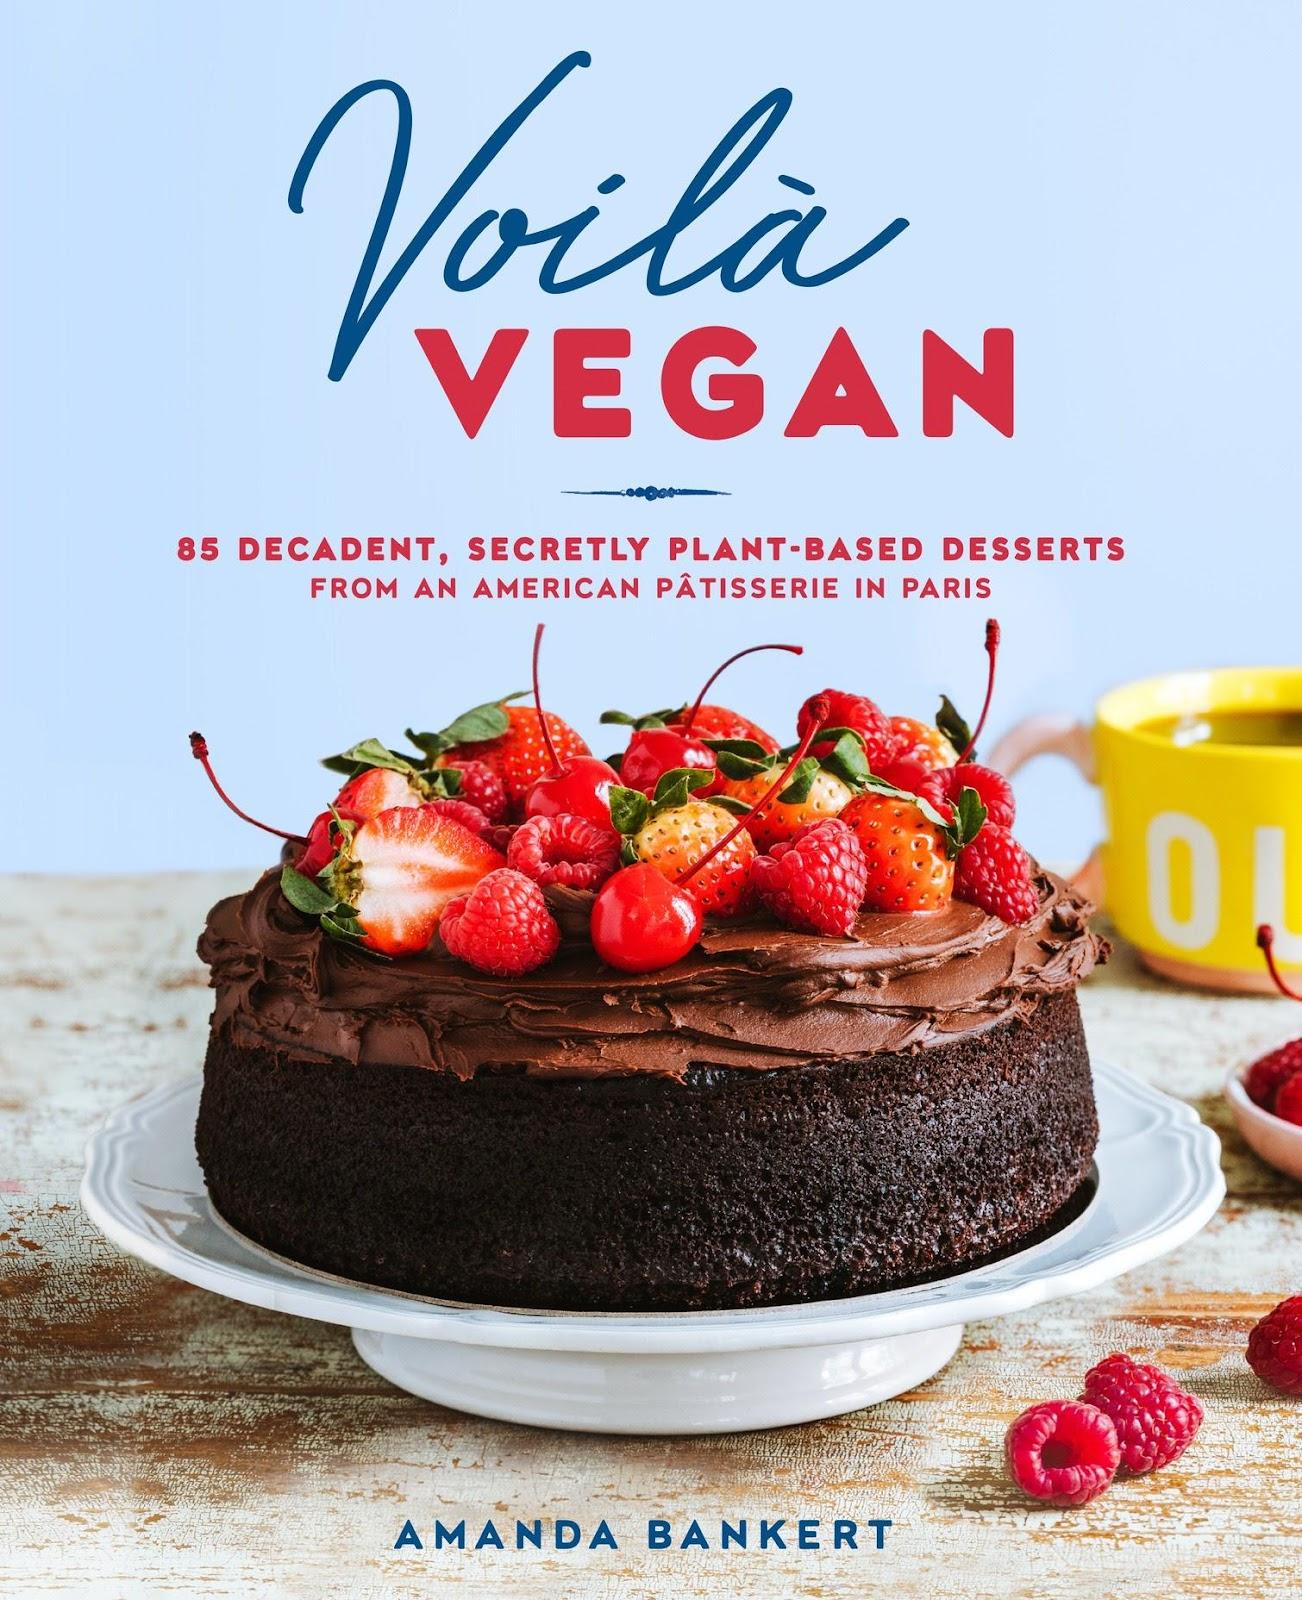 Voila Vegan Book by Amanda Bankert